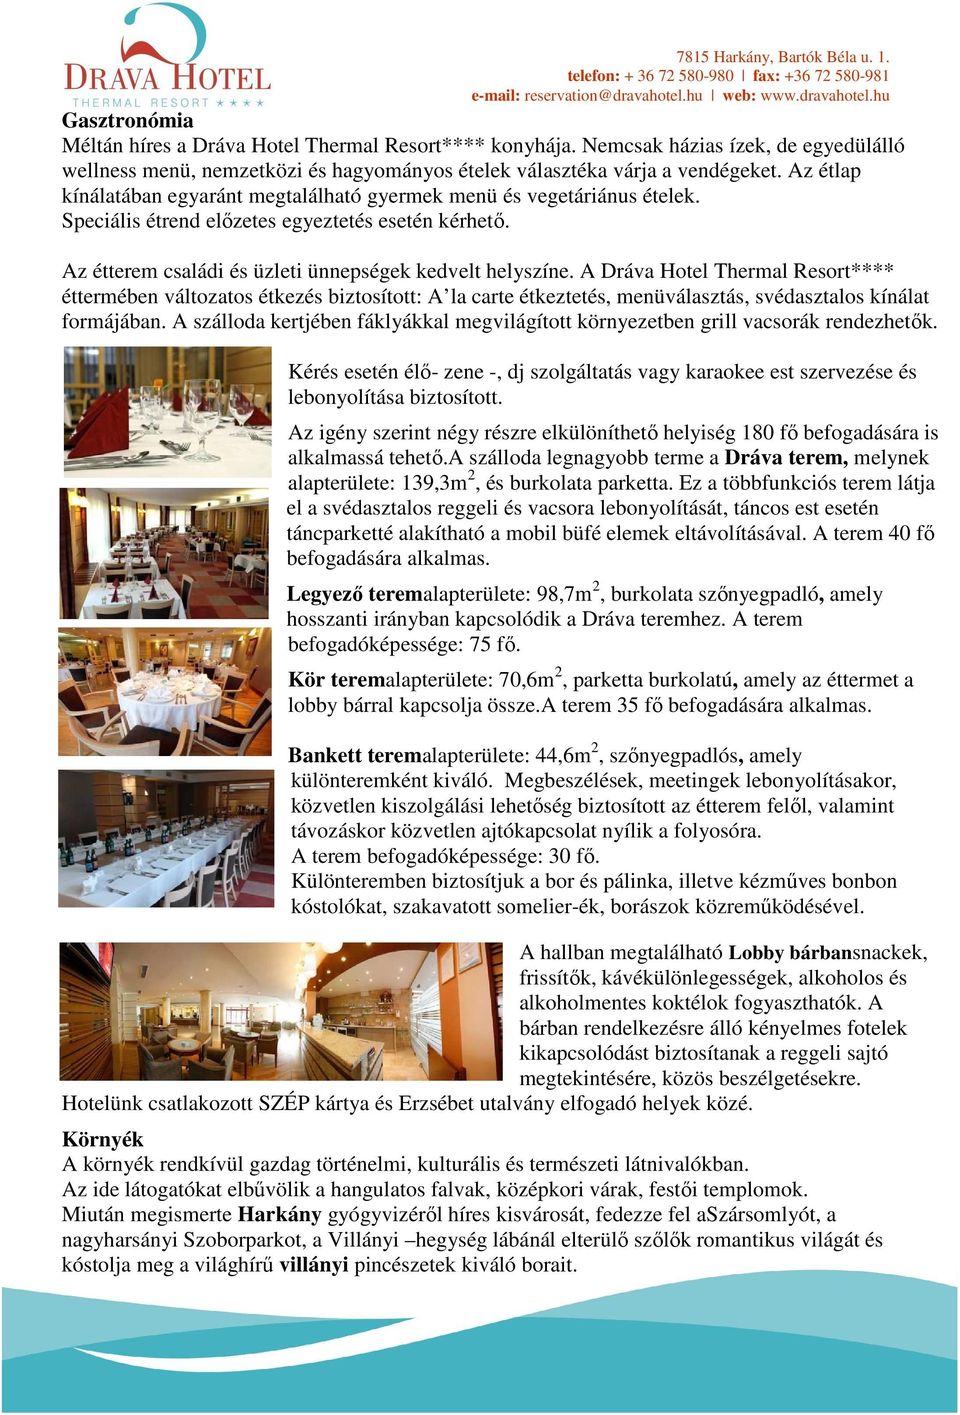 A Dráva Hotel Thermal Resort**** éttermében változatos étkezés biztosított: A la carte étkeztetés, menüválasztás, svédasztalos kínálat formájában.